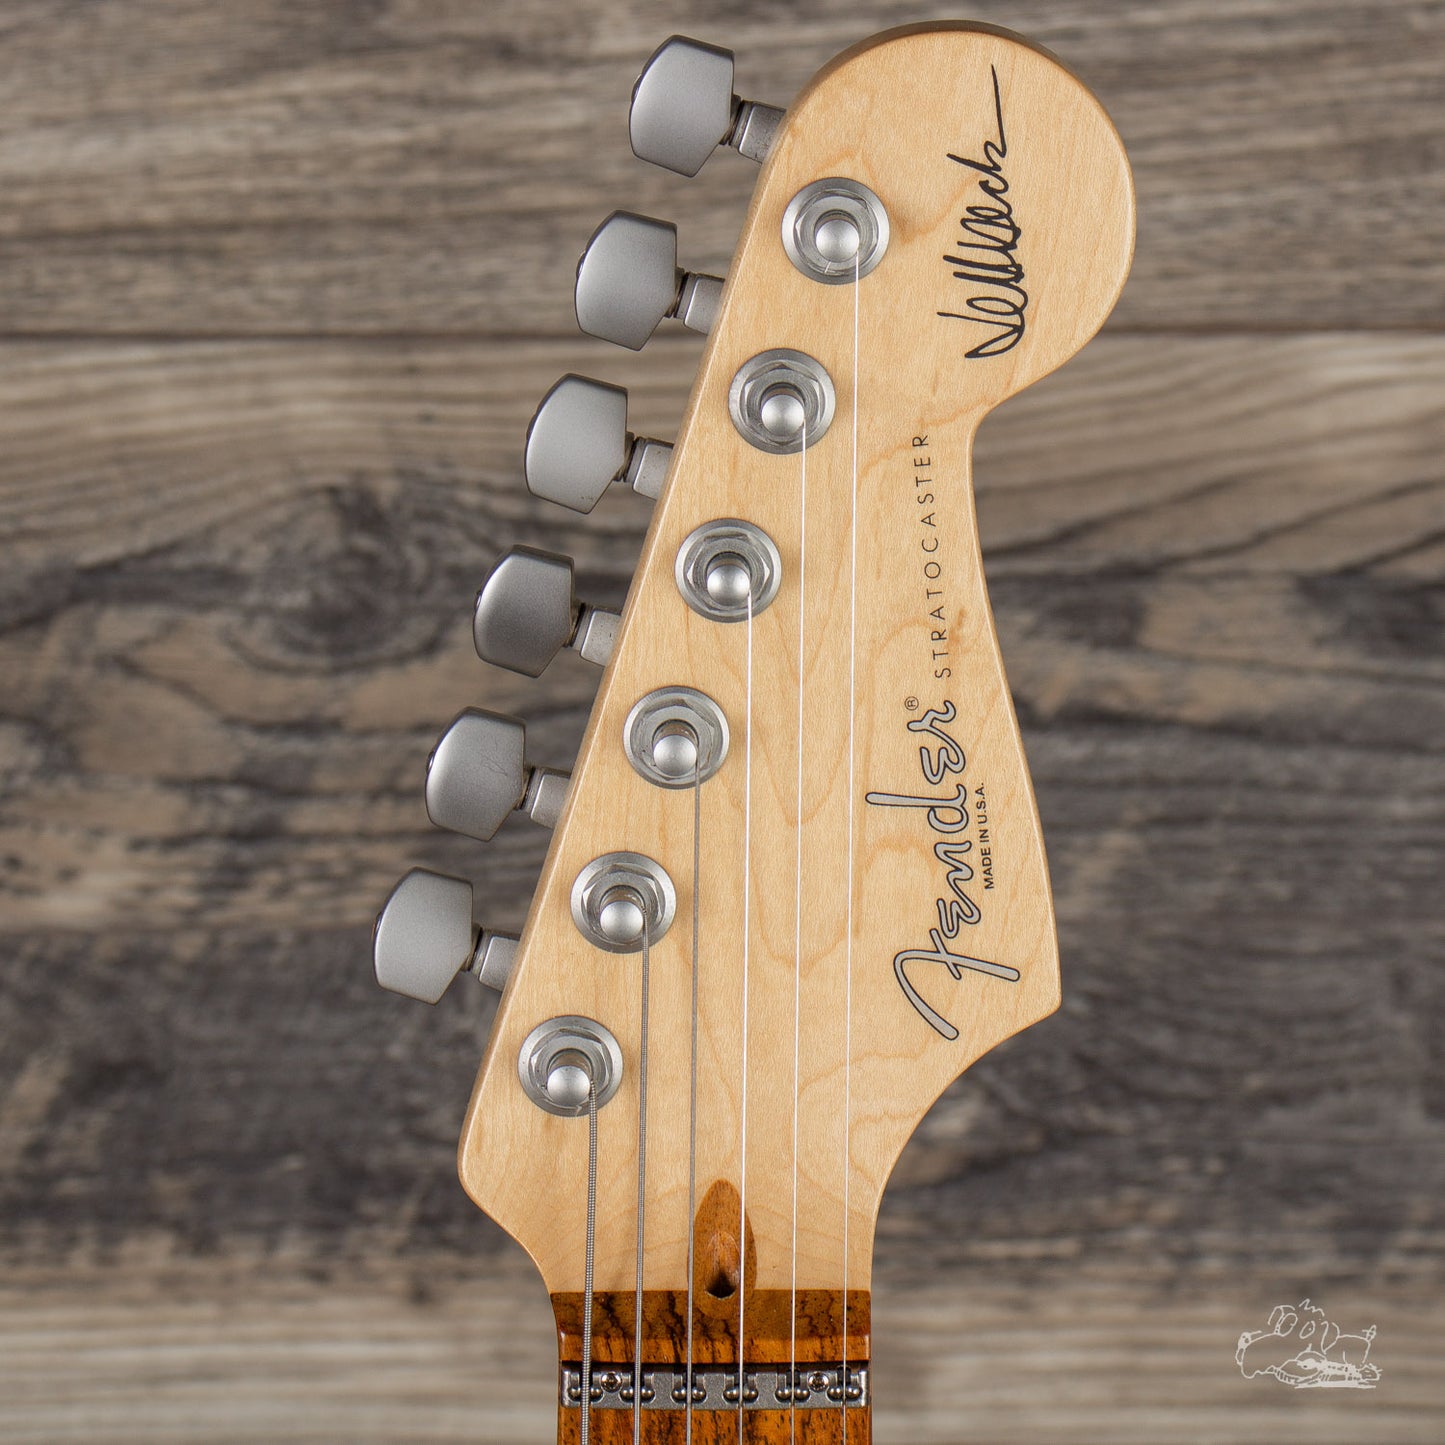 2008 Fender Jeff Beck Stratocaster - Make us an Offer!